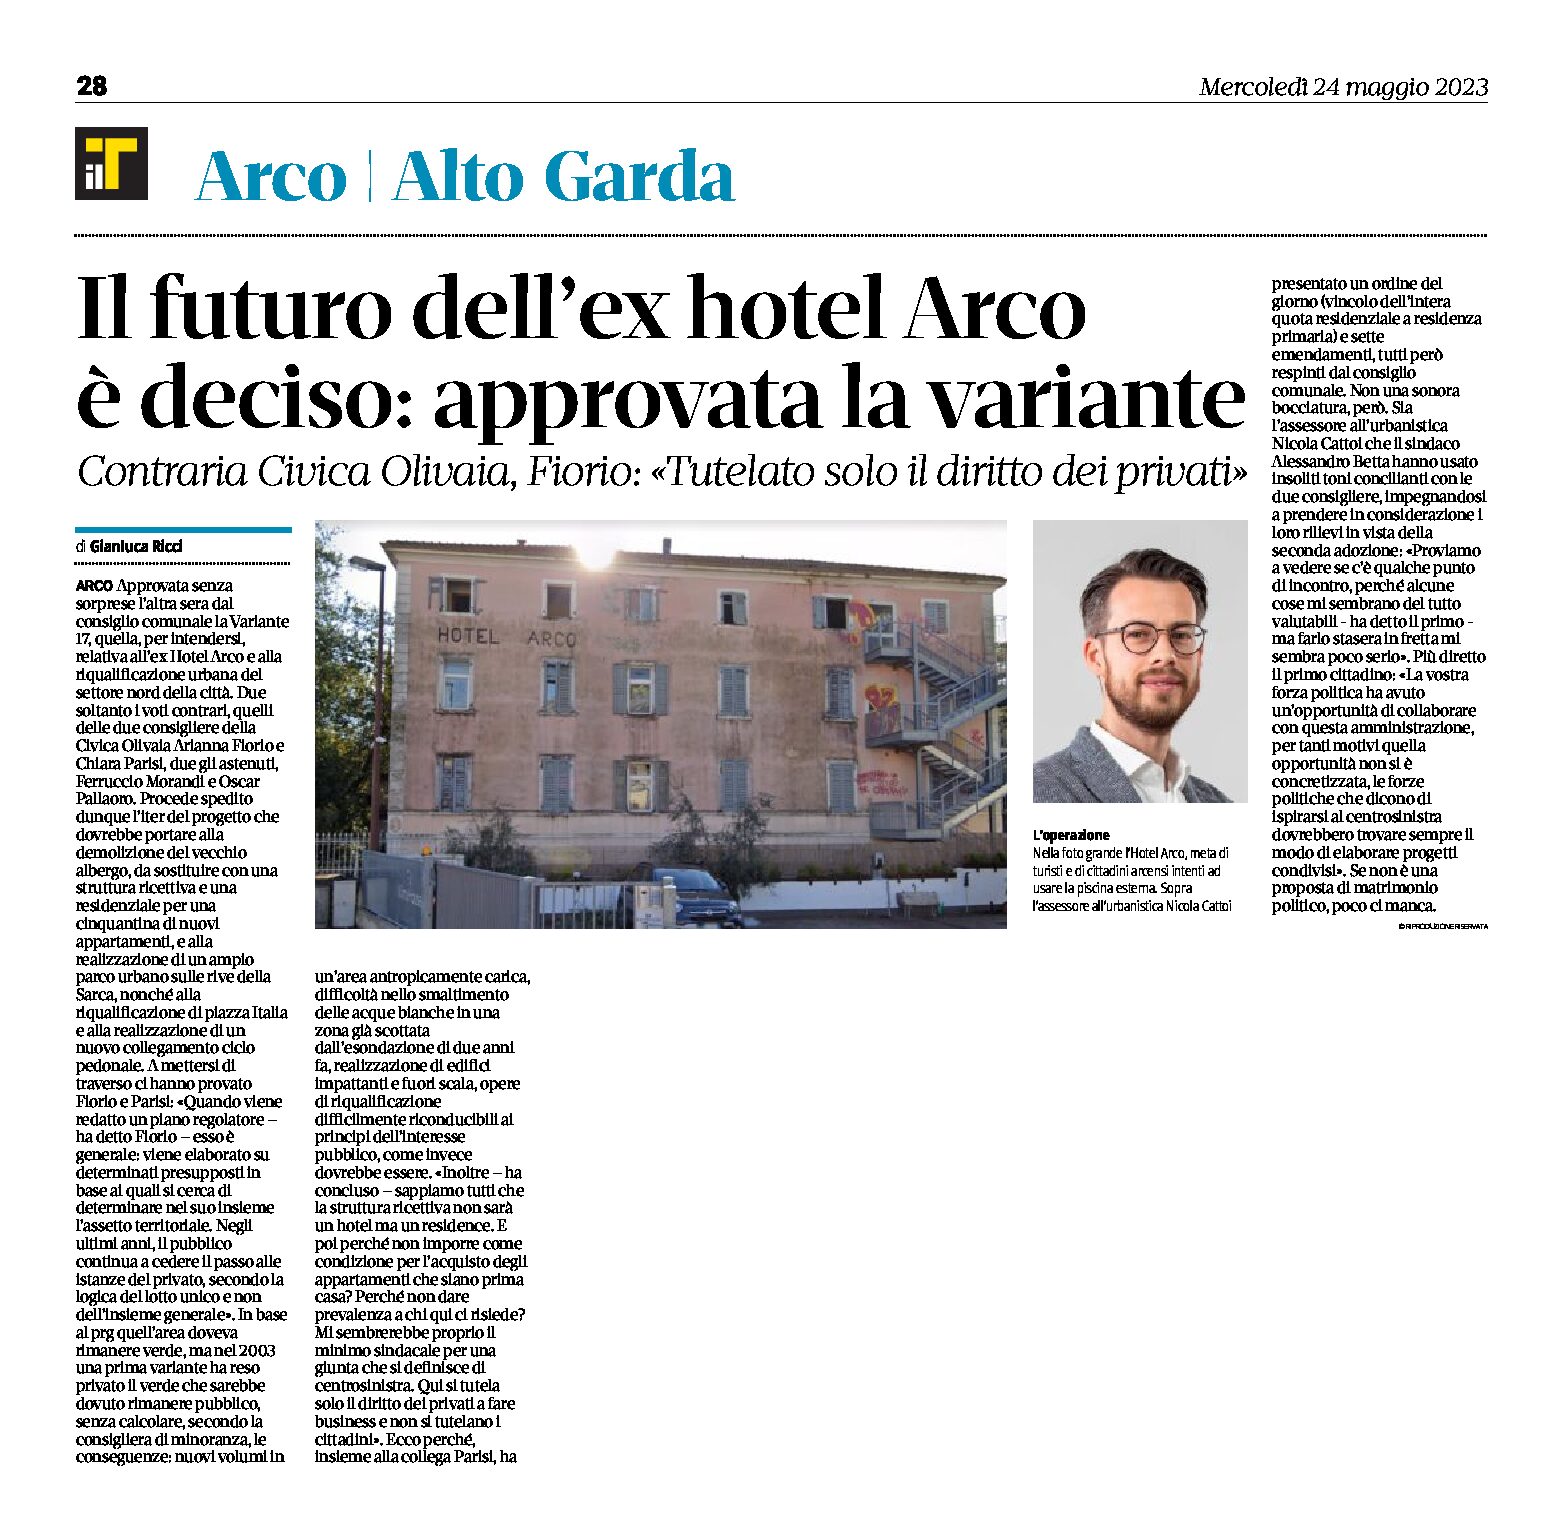 Ex Hotel Arco: il futuro è deciso, approvata la variante